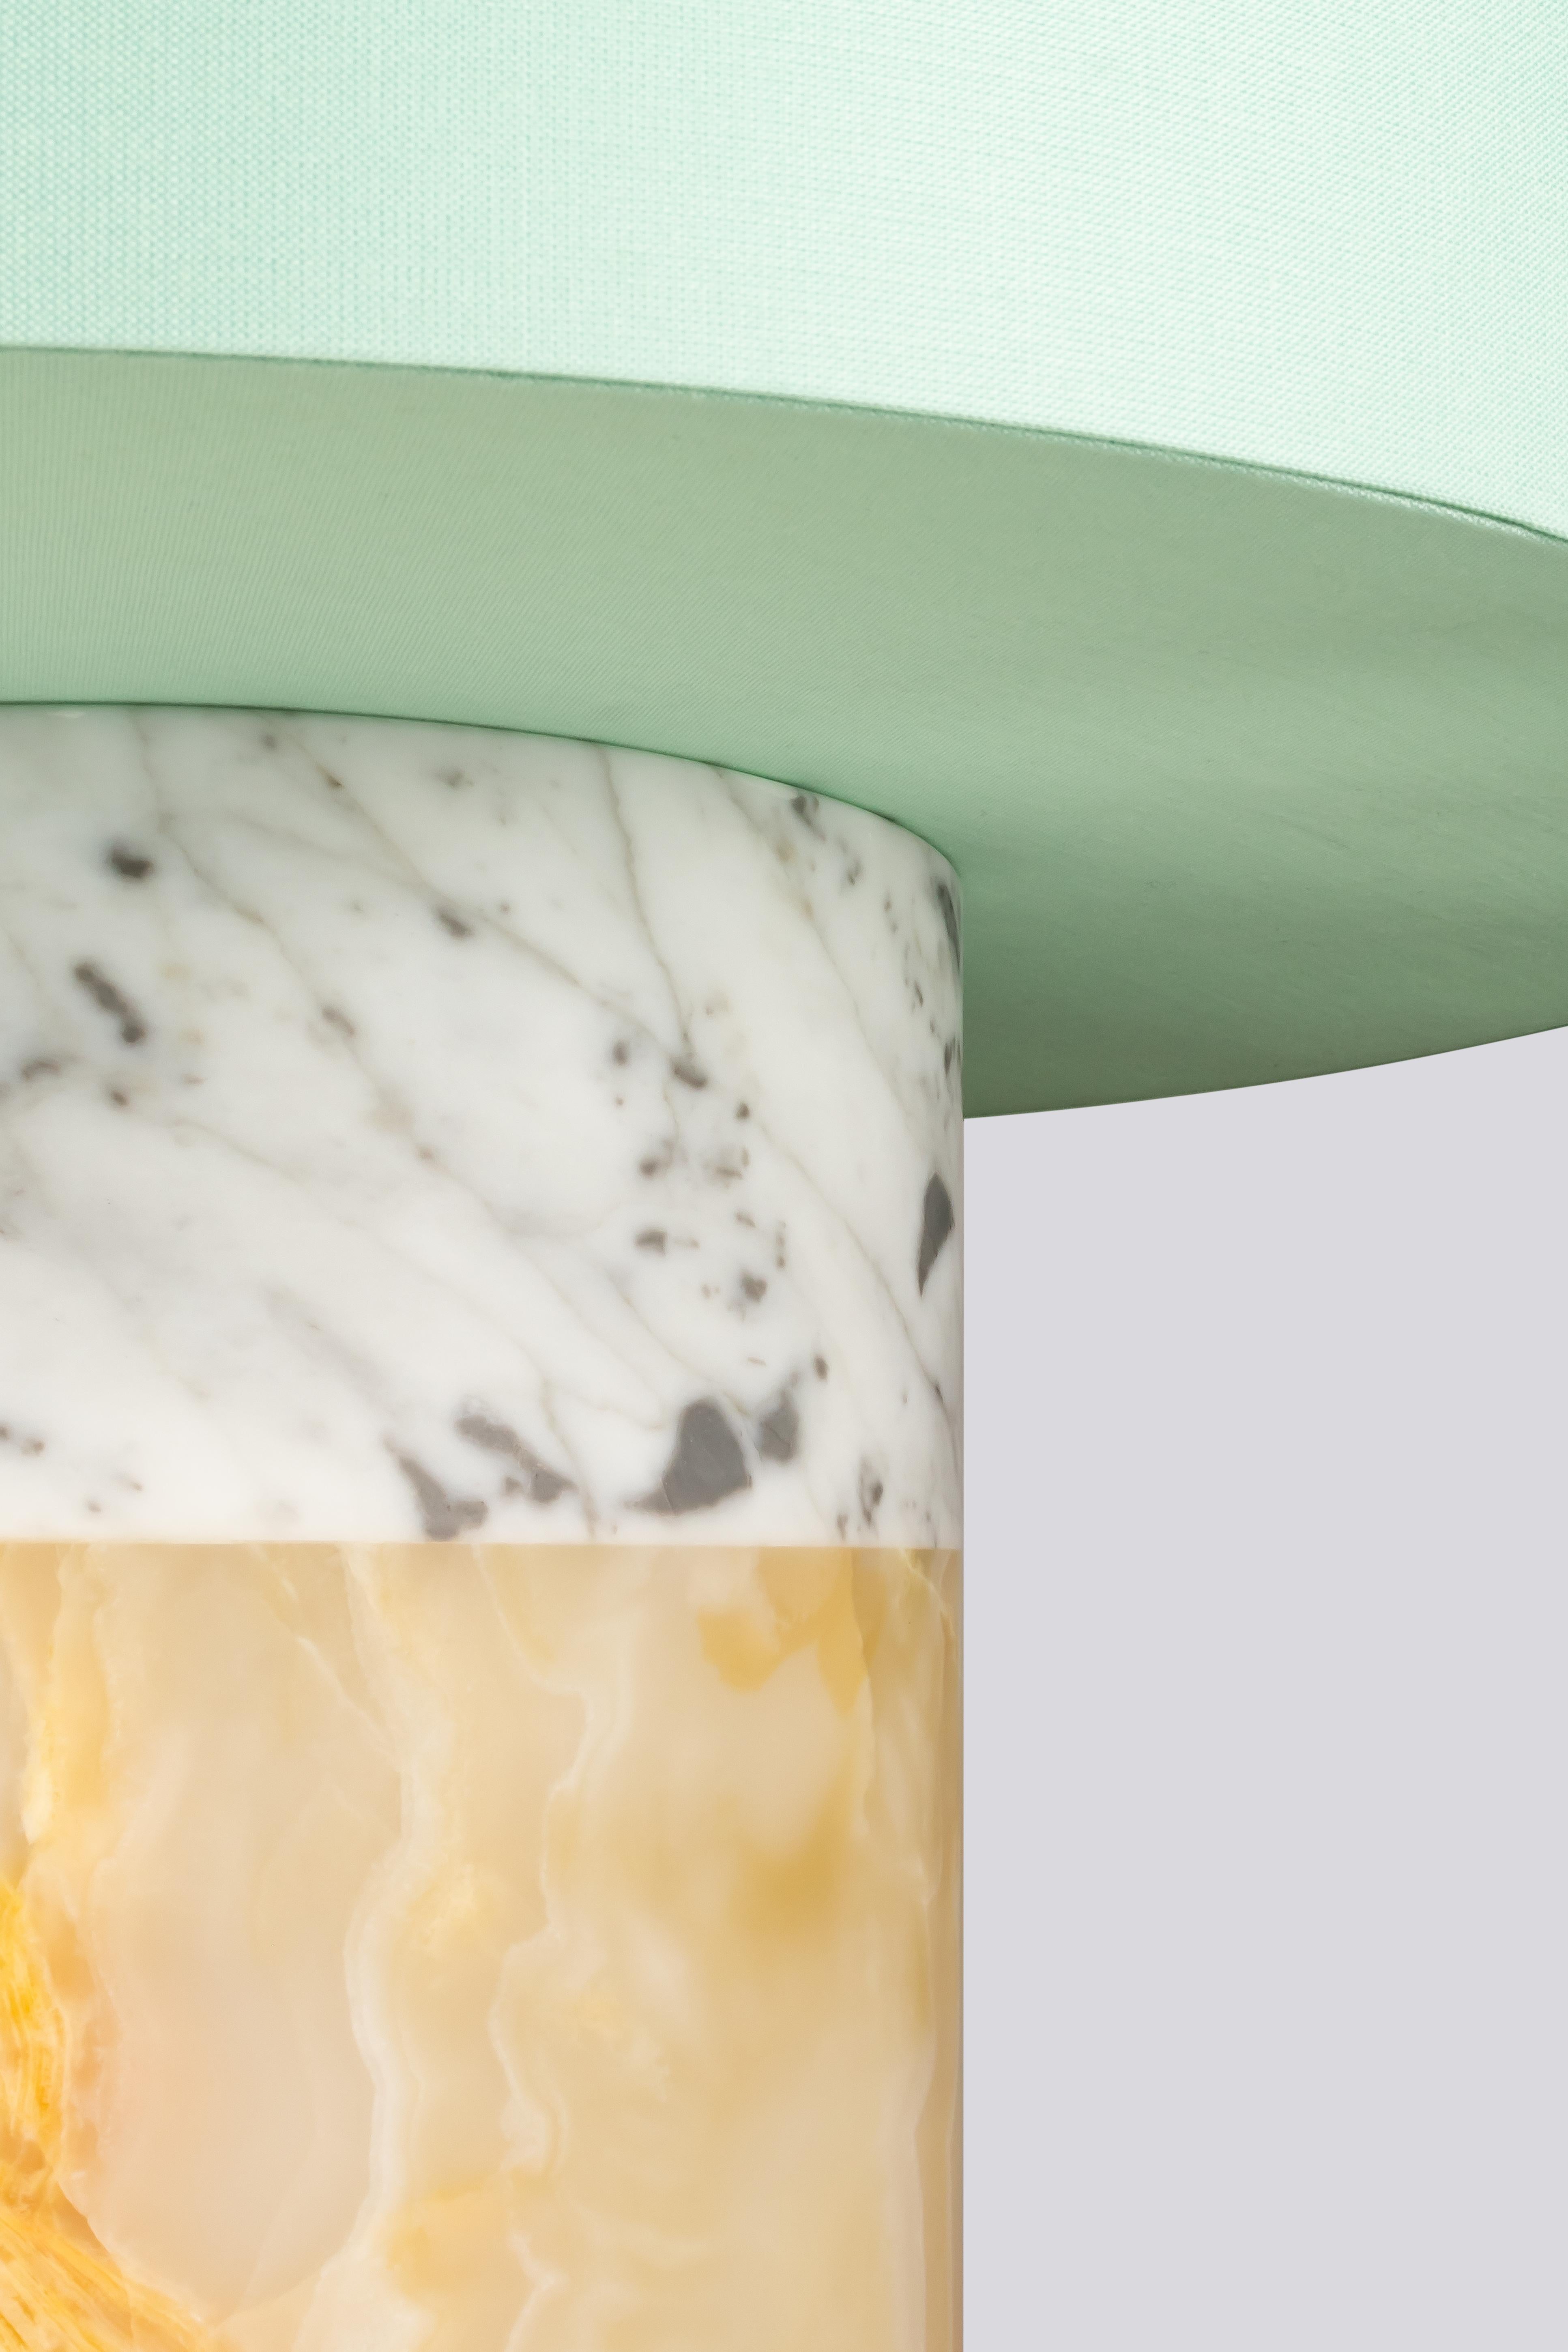 Entdecken Sie unsere exquisite Tischleuchte aus Marmor und Onyx, ein zeitloses und modernes Stück, das Eleganz und Handwerkskunst vereint. Der fachmännisch in klassischer Säulenform gefertigte Sockel der Leuchte präsentiert zwei luxuriöse